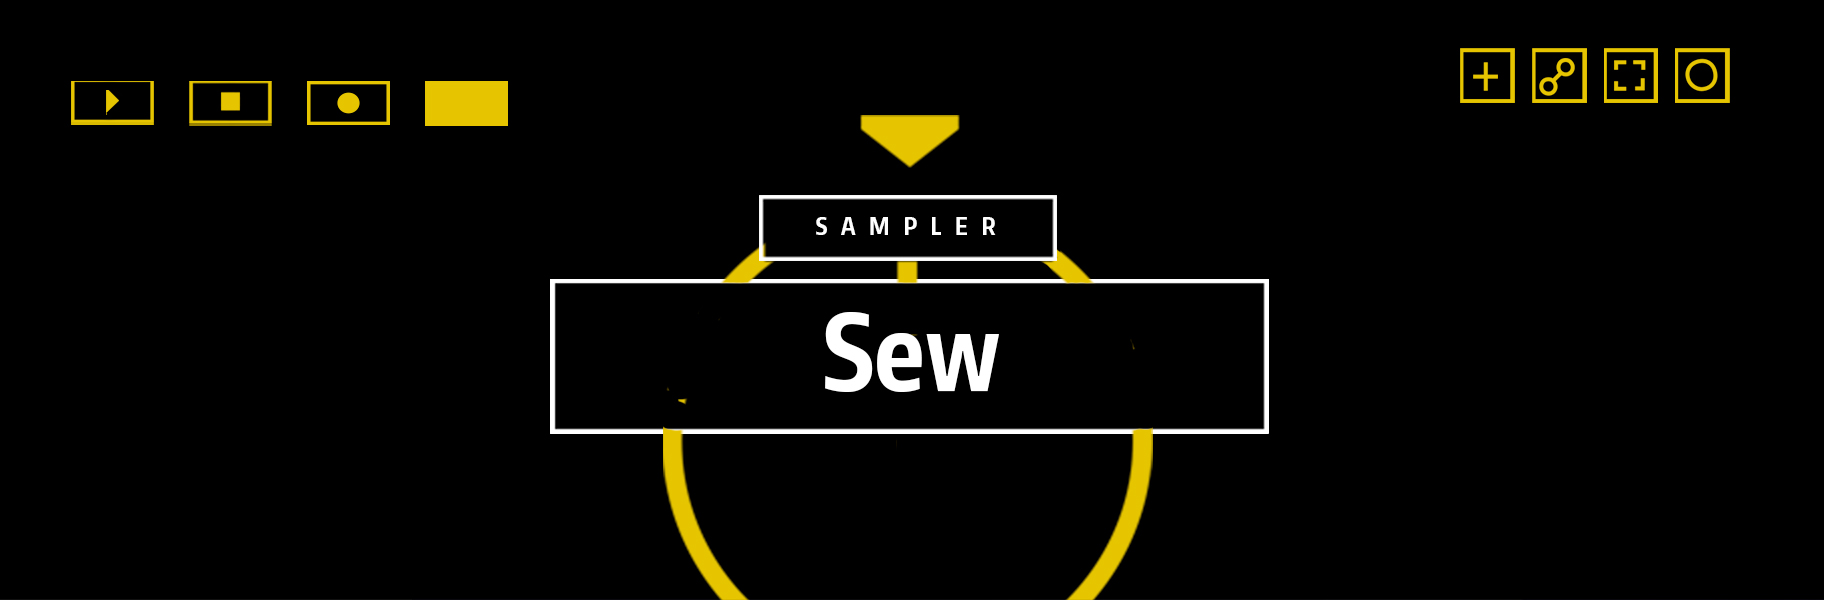 Sampler Instruments #7 - Sew